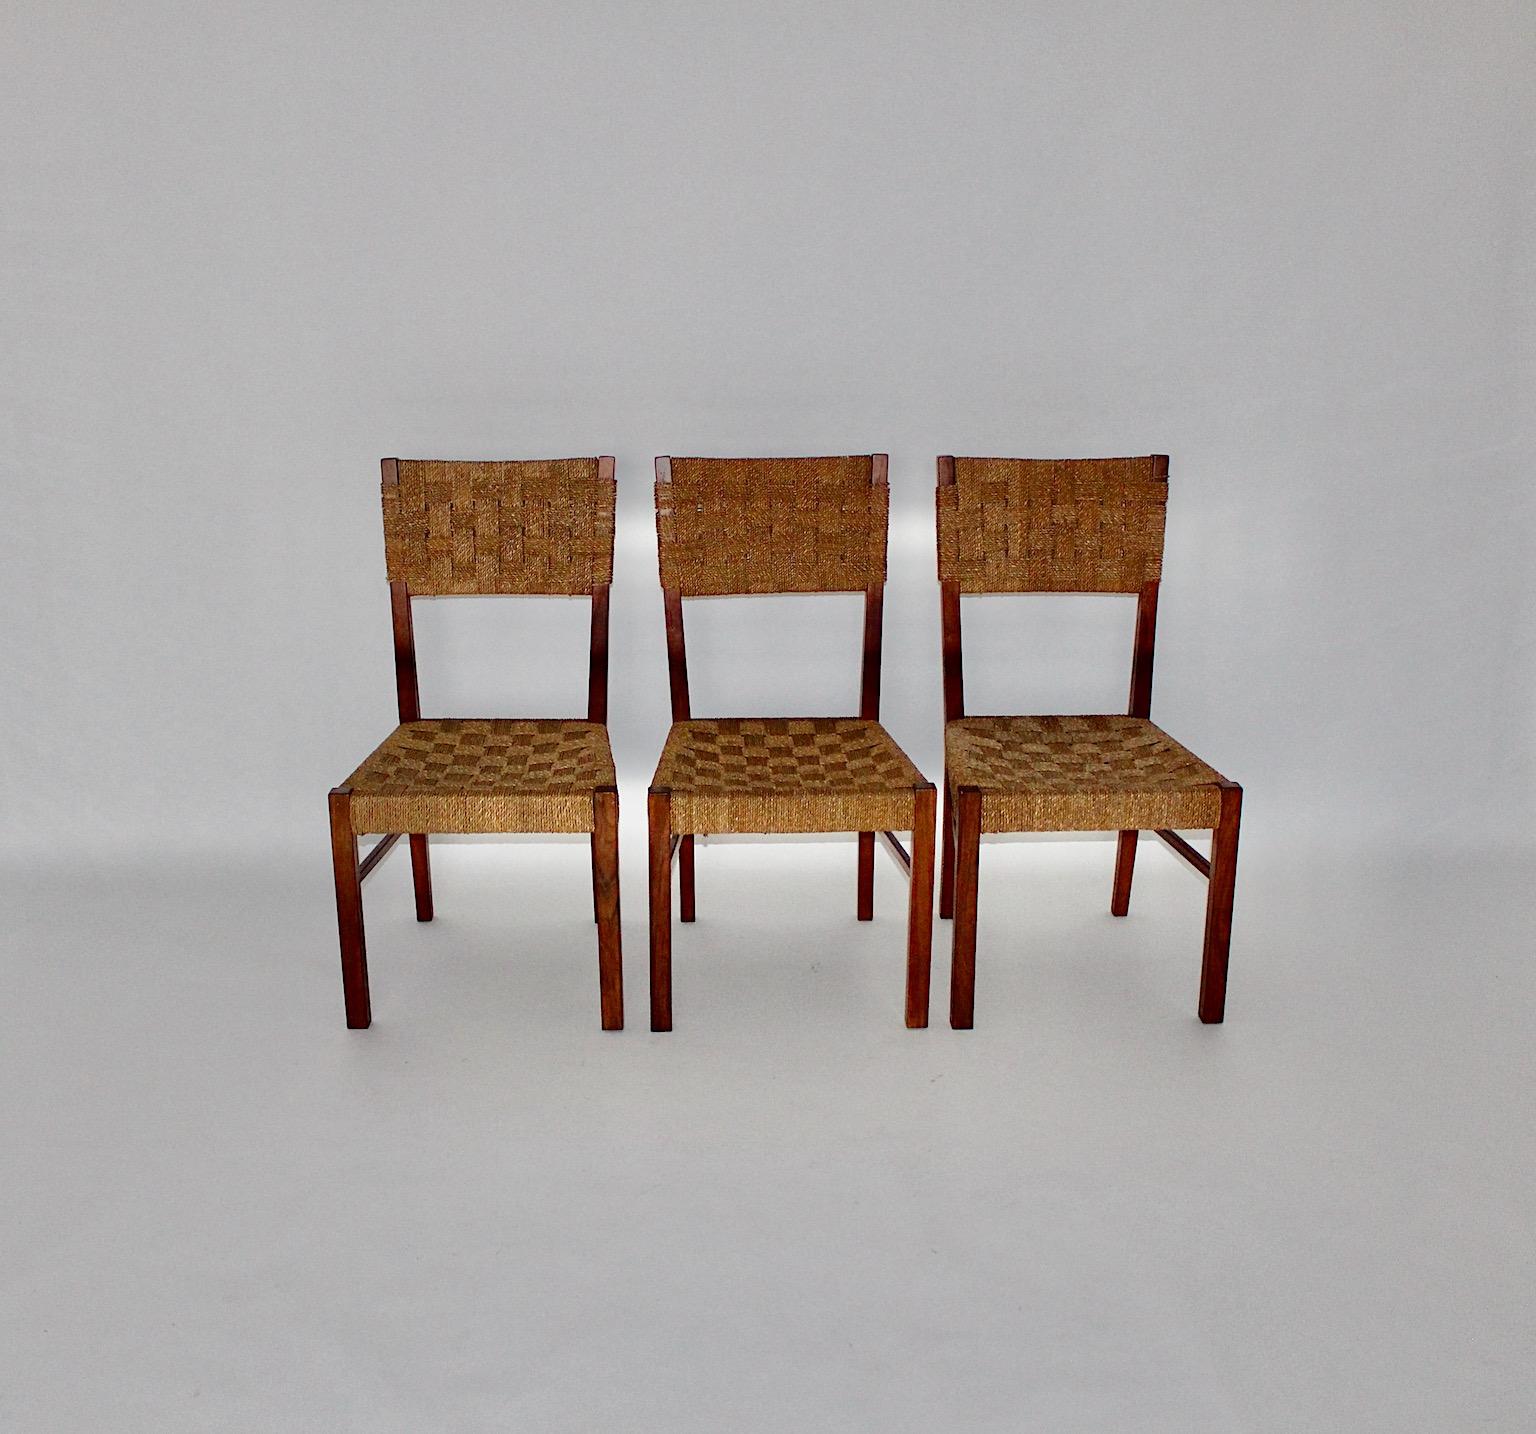 Mid-Century Modern trois chaises à manger vintage ou des chaises à partir de noix et de cordes de sisal dans le ton de couleur brun Autriche 1950s.
Trois chaises de salle à manger ou chaises organiques minimalistes présentent un cadre en noyer